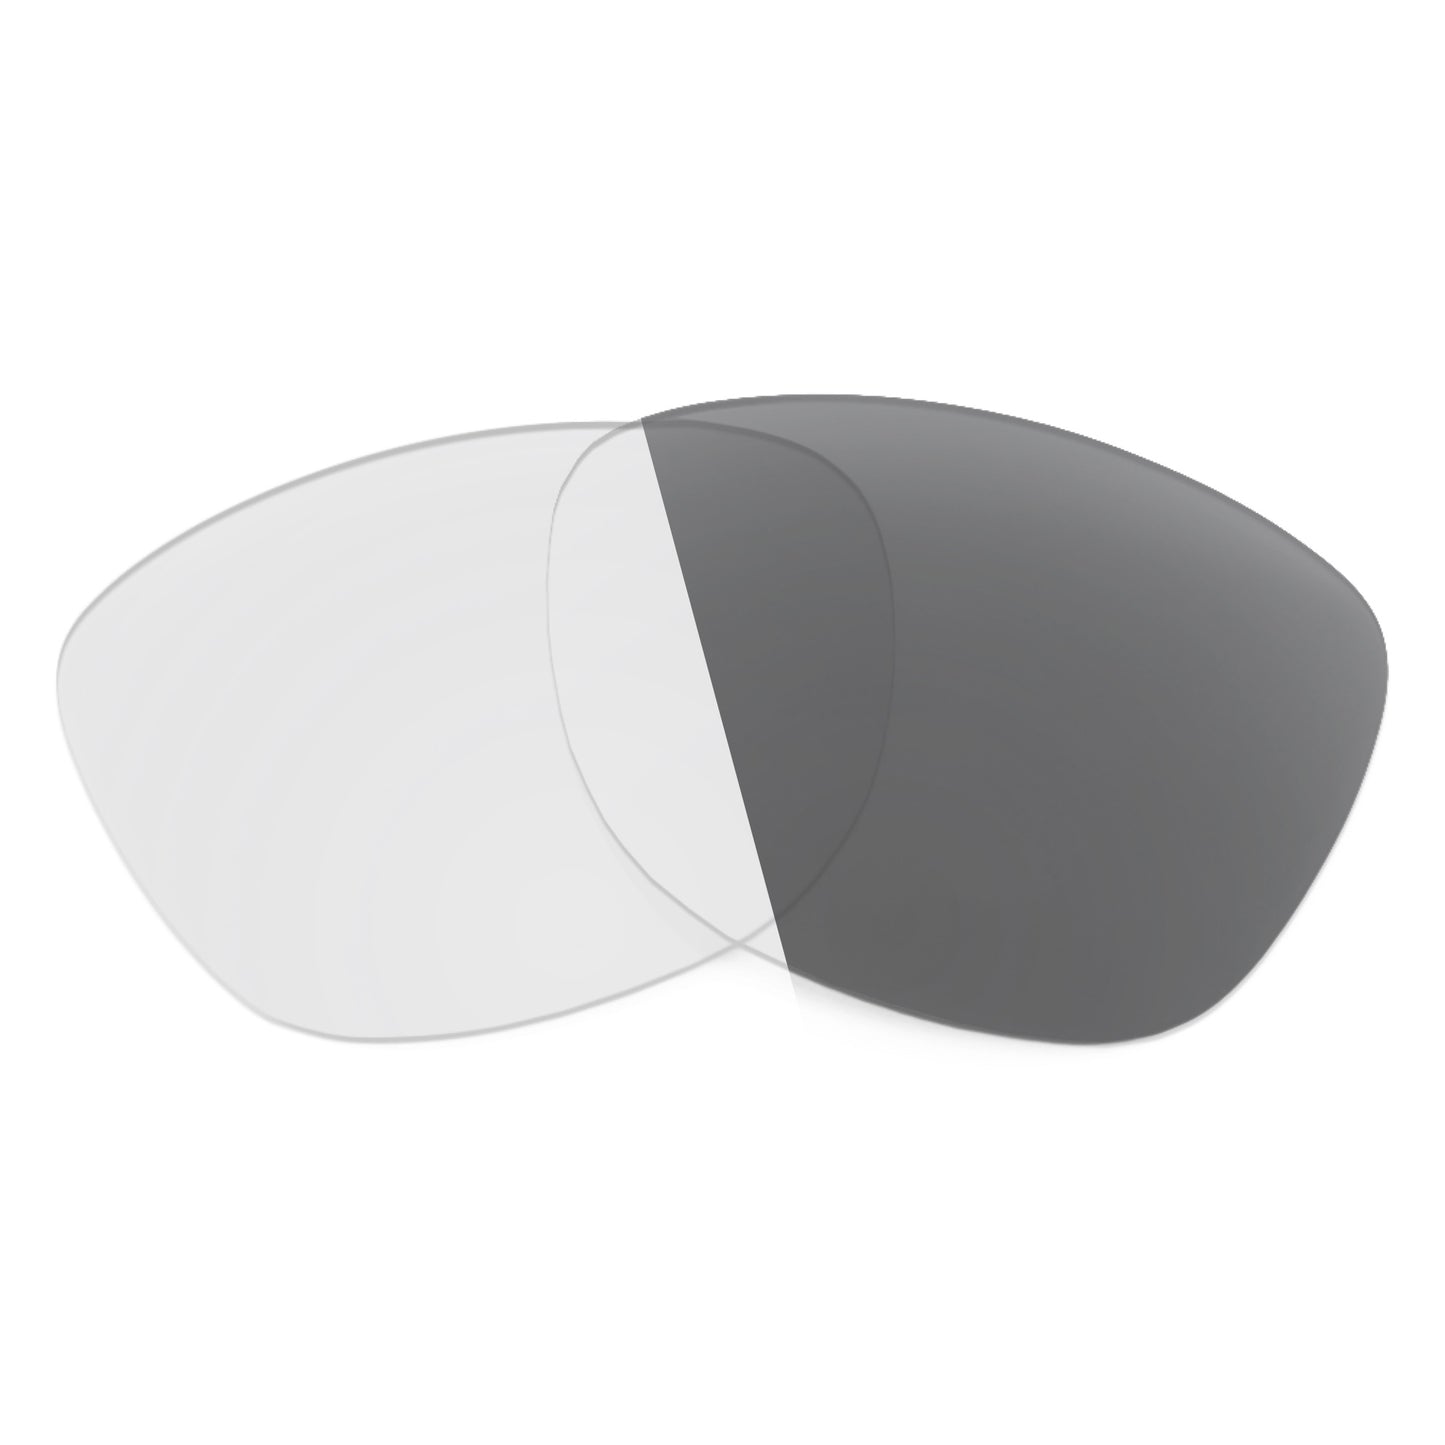 Revant replacement lenses for Maui Jim Honey Girl MJ751 Non-Polarized Adapt Gray Photochromic